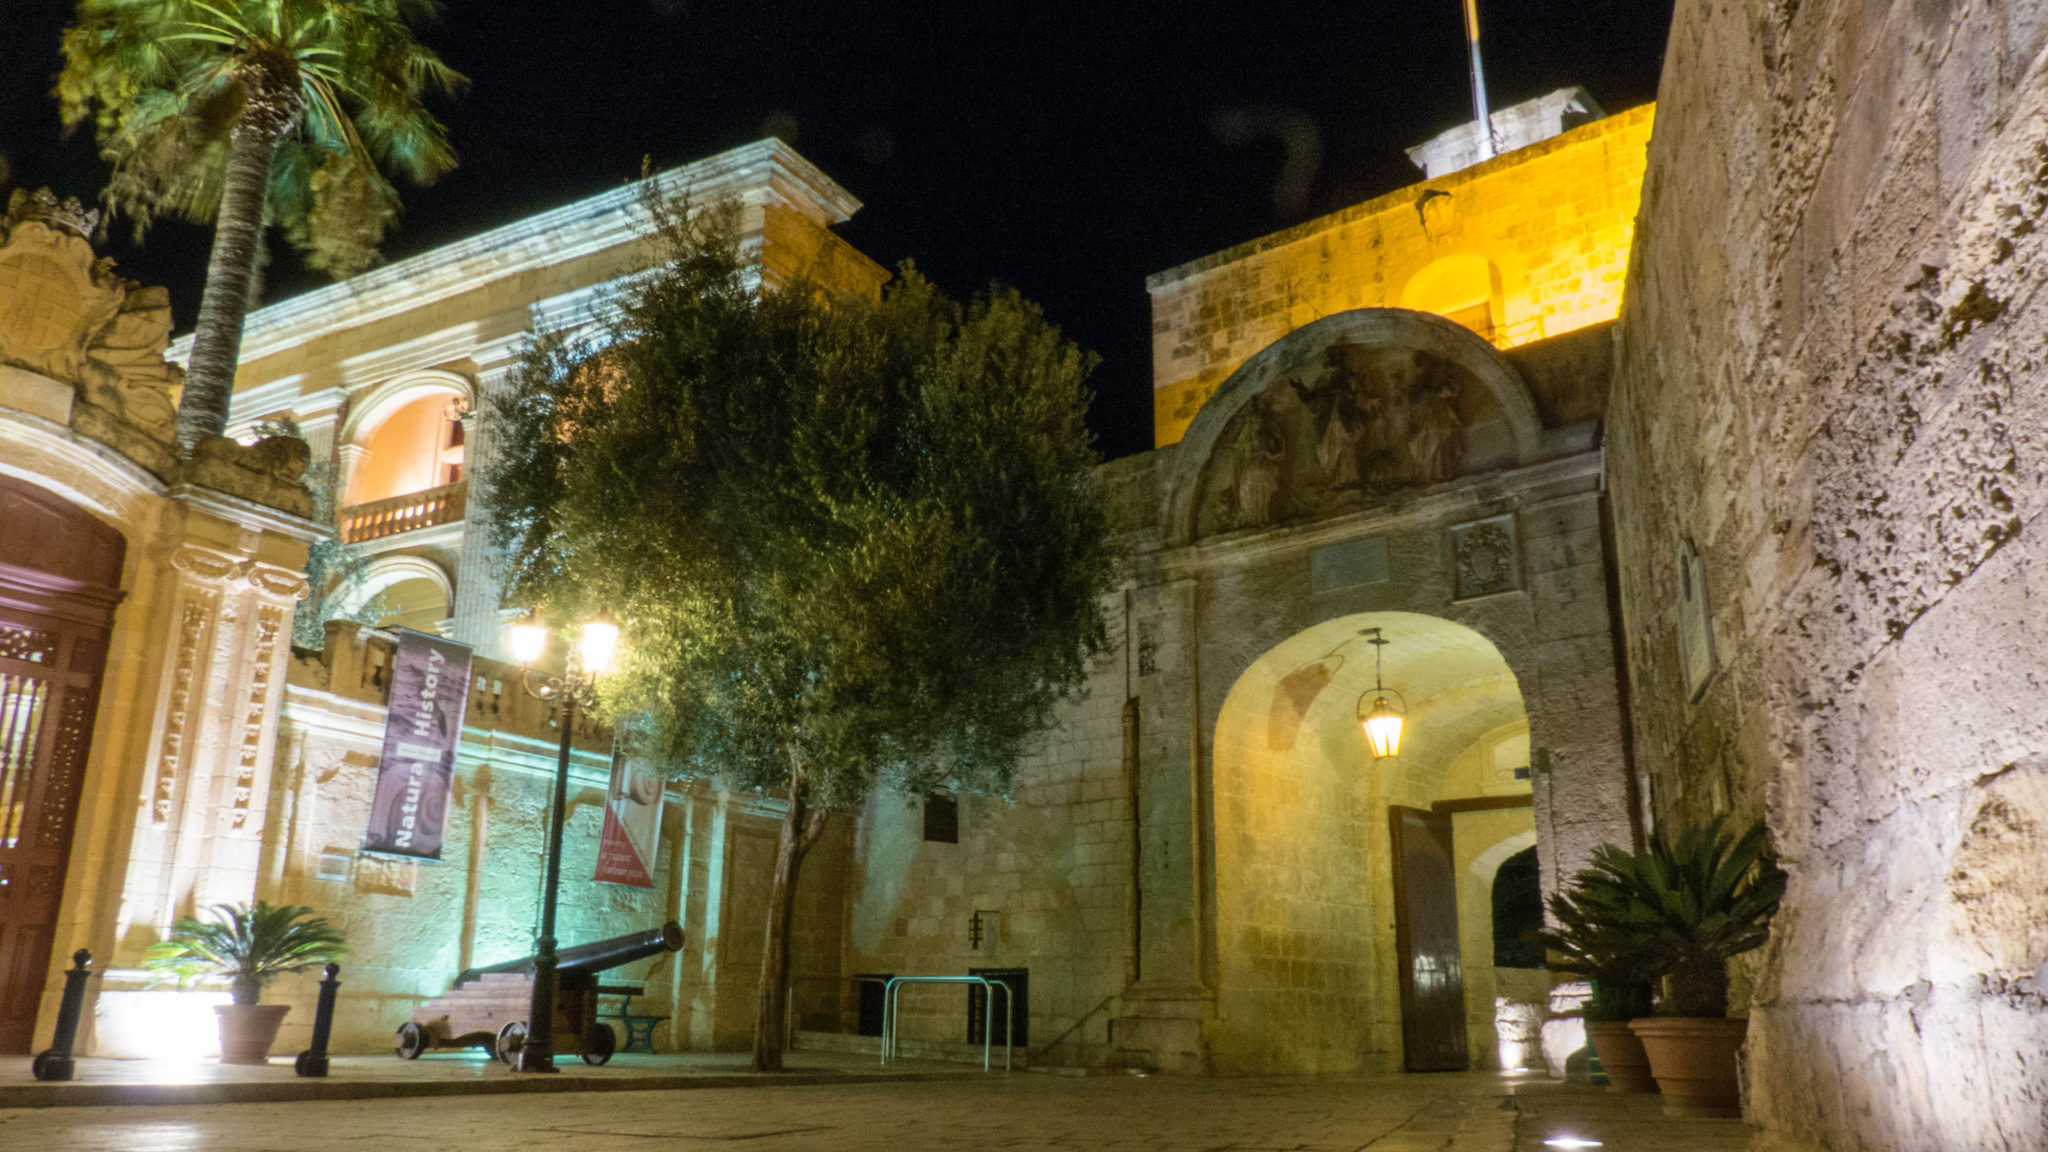 Das Tor von Mdina bei Rabat ist einer von zahlreichen "Game of Thrones"-Drehorten auf Malta.